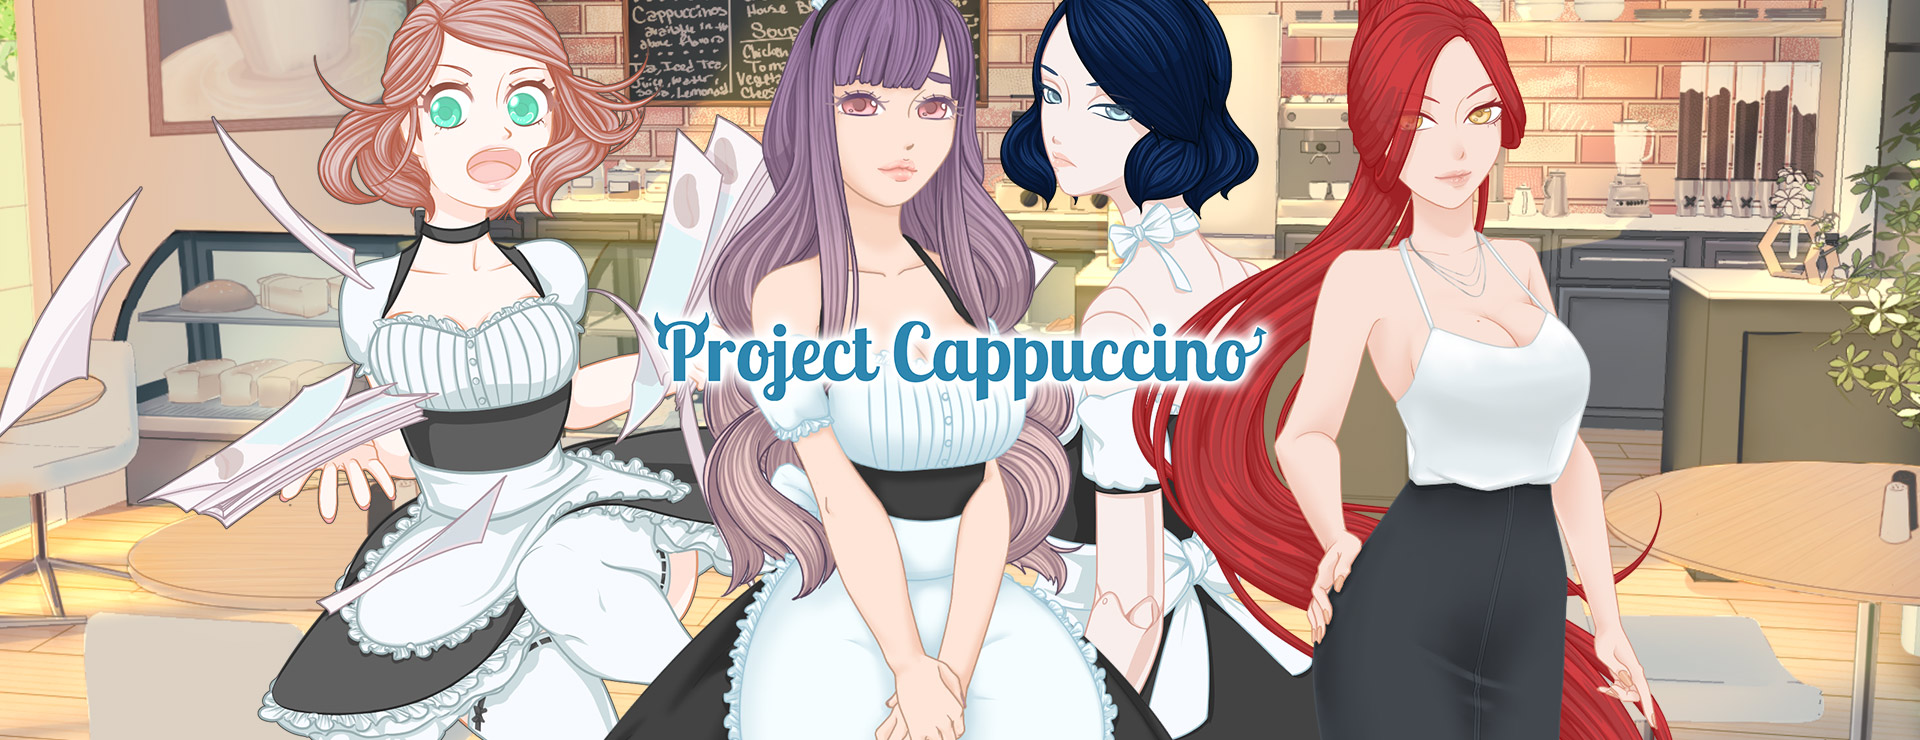 Project Cappuccino - Roman Visuel Jeu